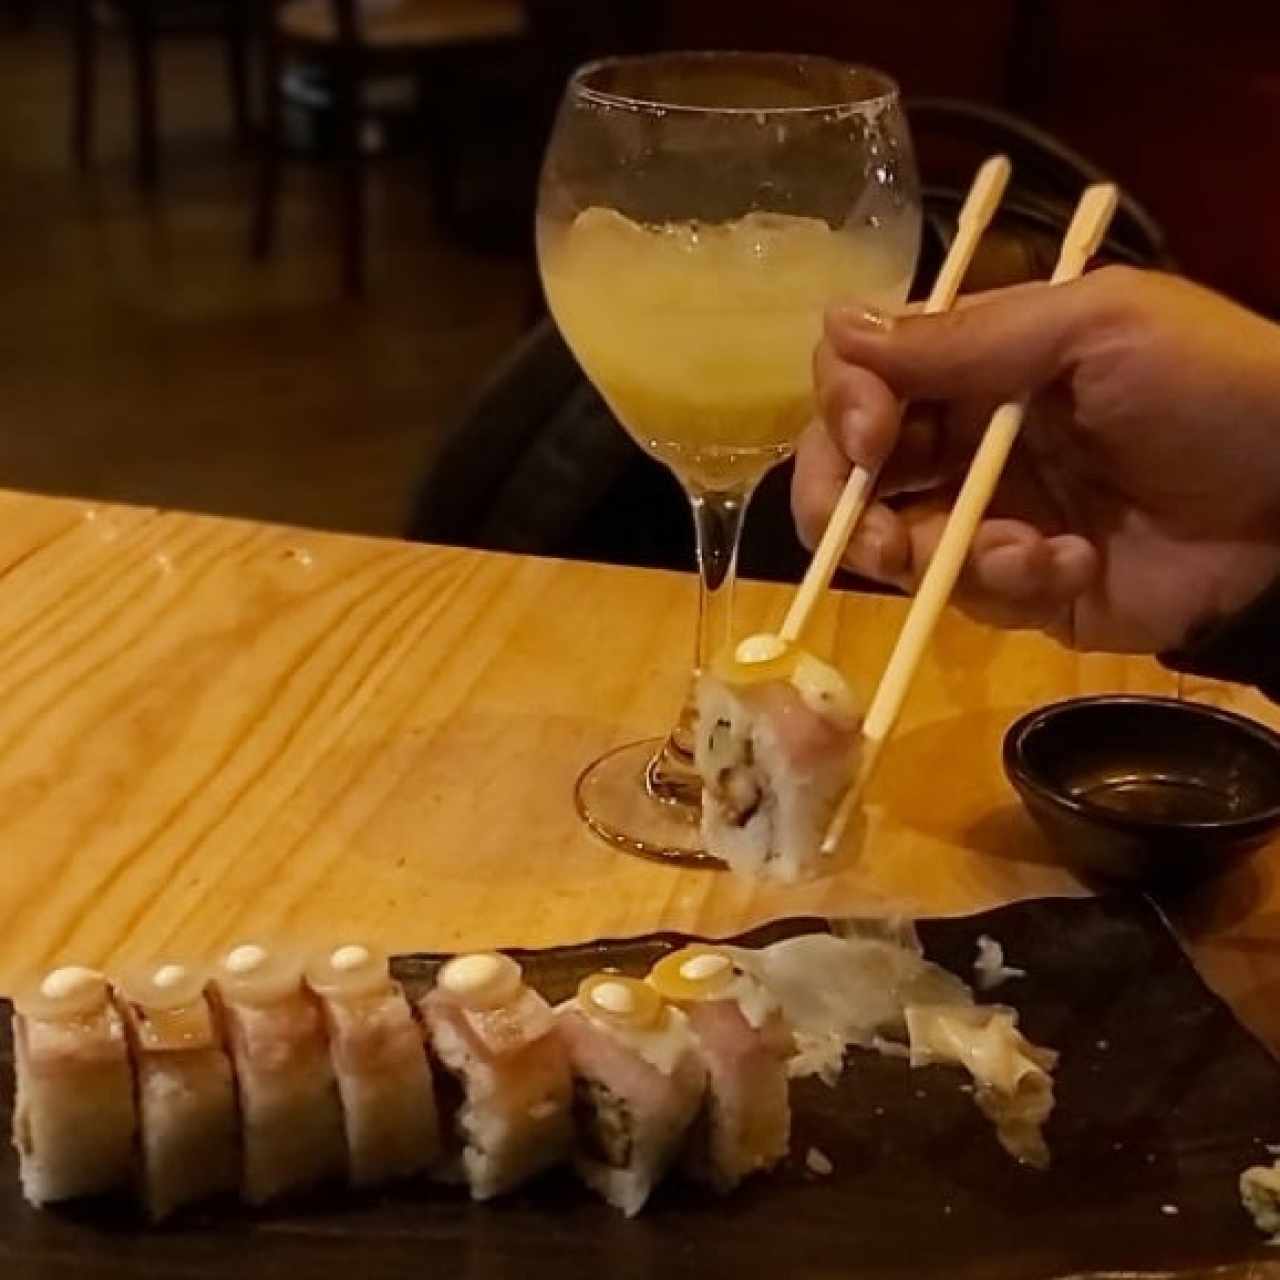 sushi master